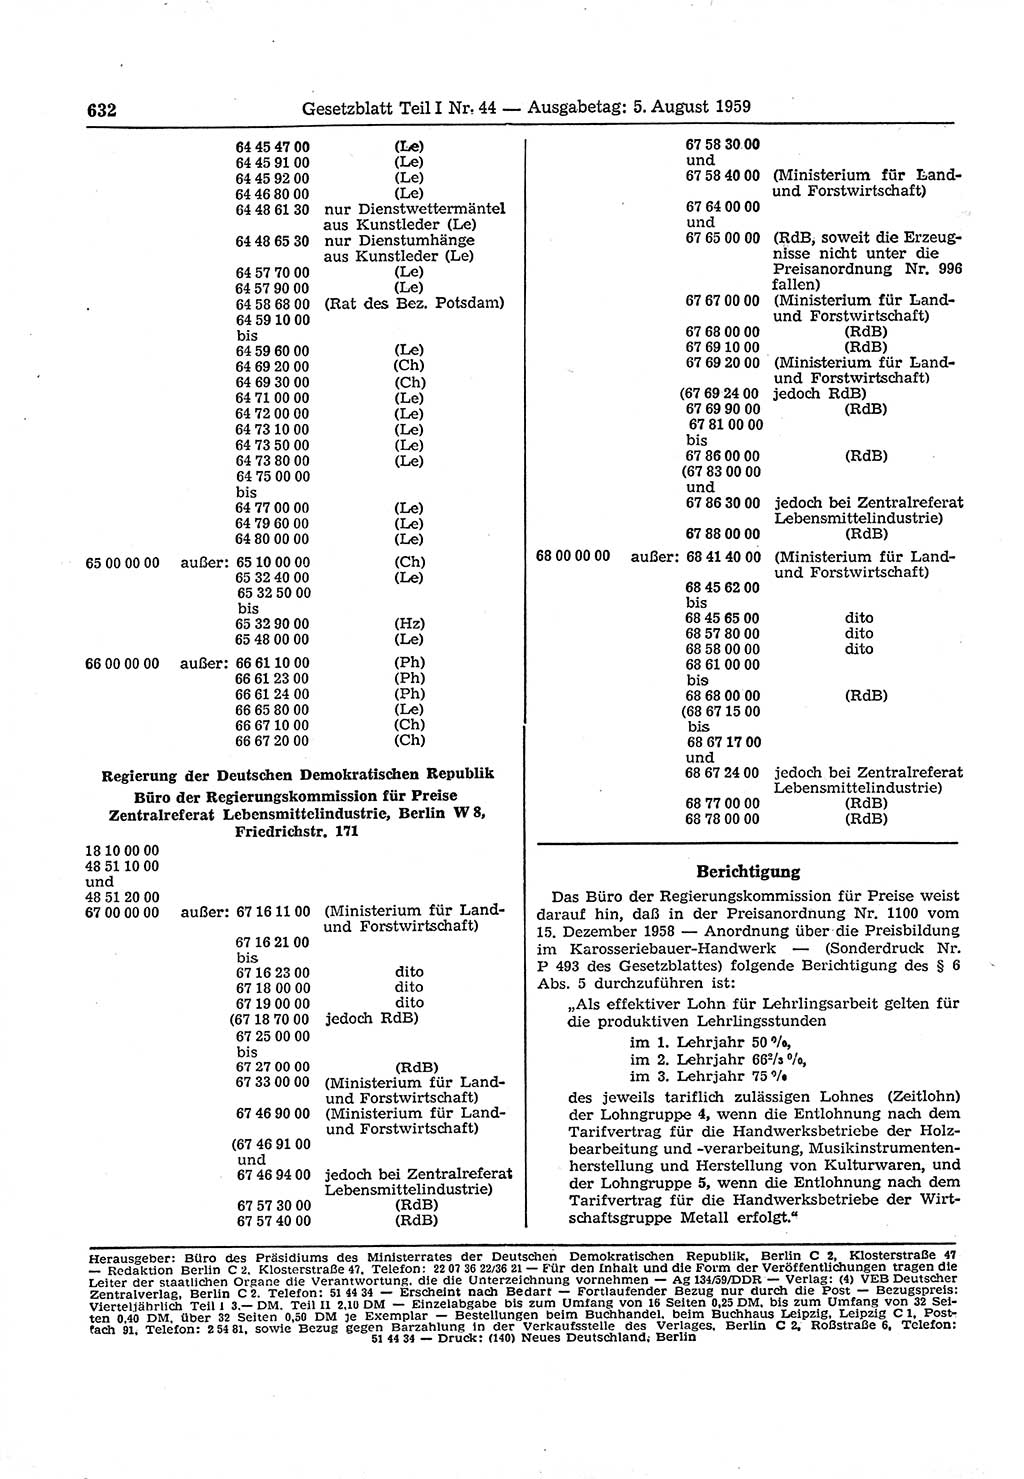 Gesetzblatt (GBl.) der Deutschen Demokratischen Republik (DDR) Teil Ⅰ 1959, Seite 632 (GBl. DDR Ⅰ 1959, S. 632)